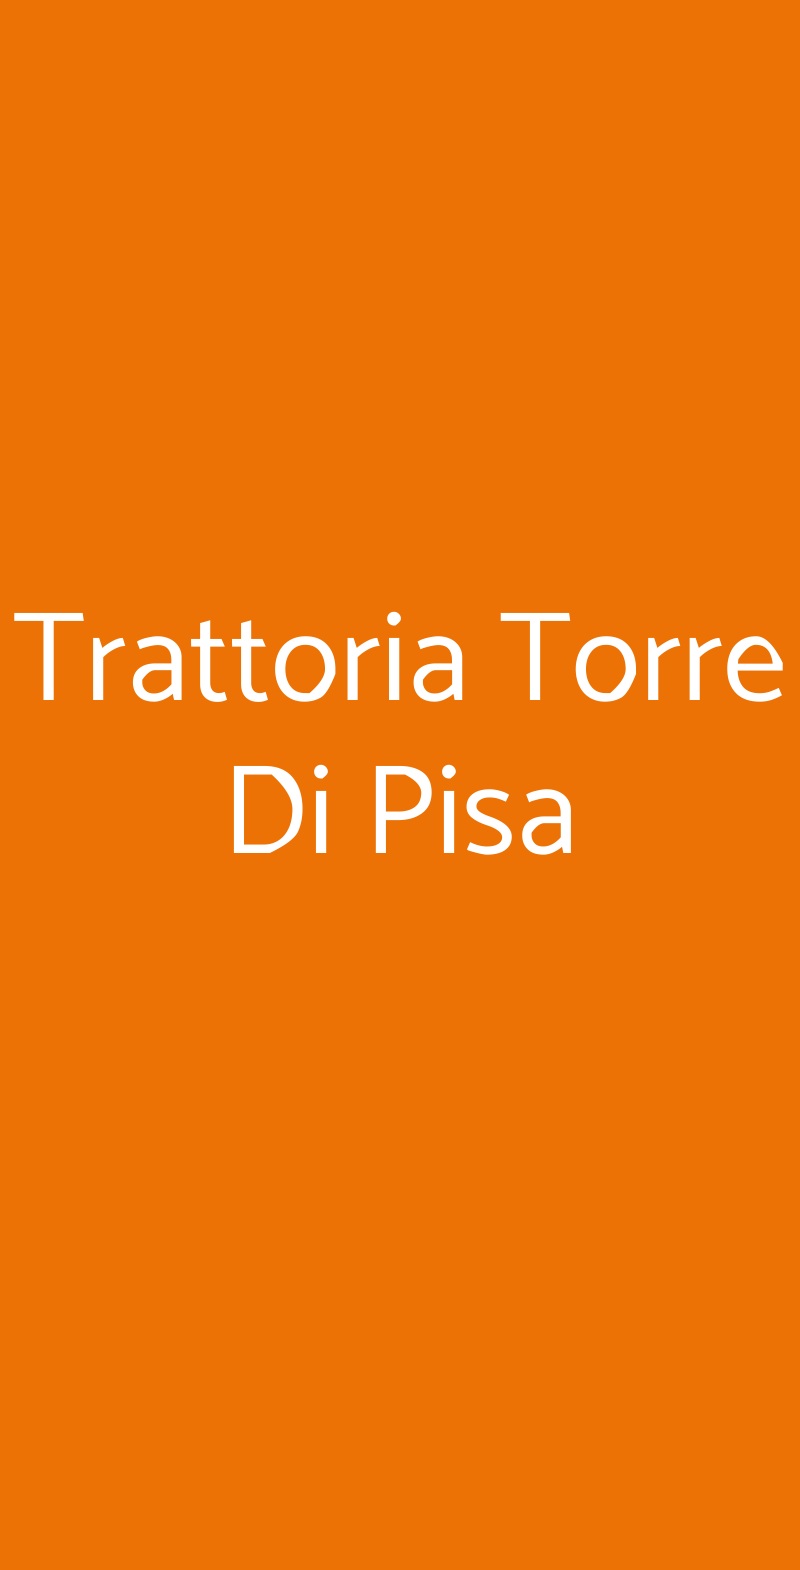 Trattoria Torre Di Pisa Milano menù 1 pagina